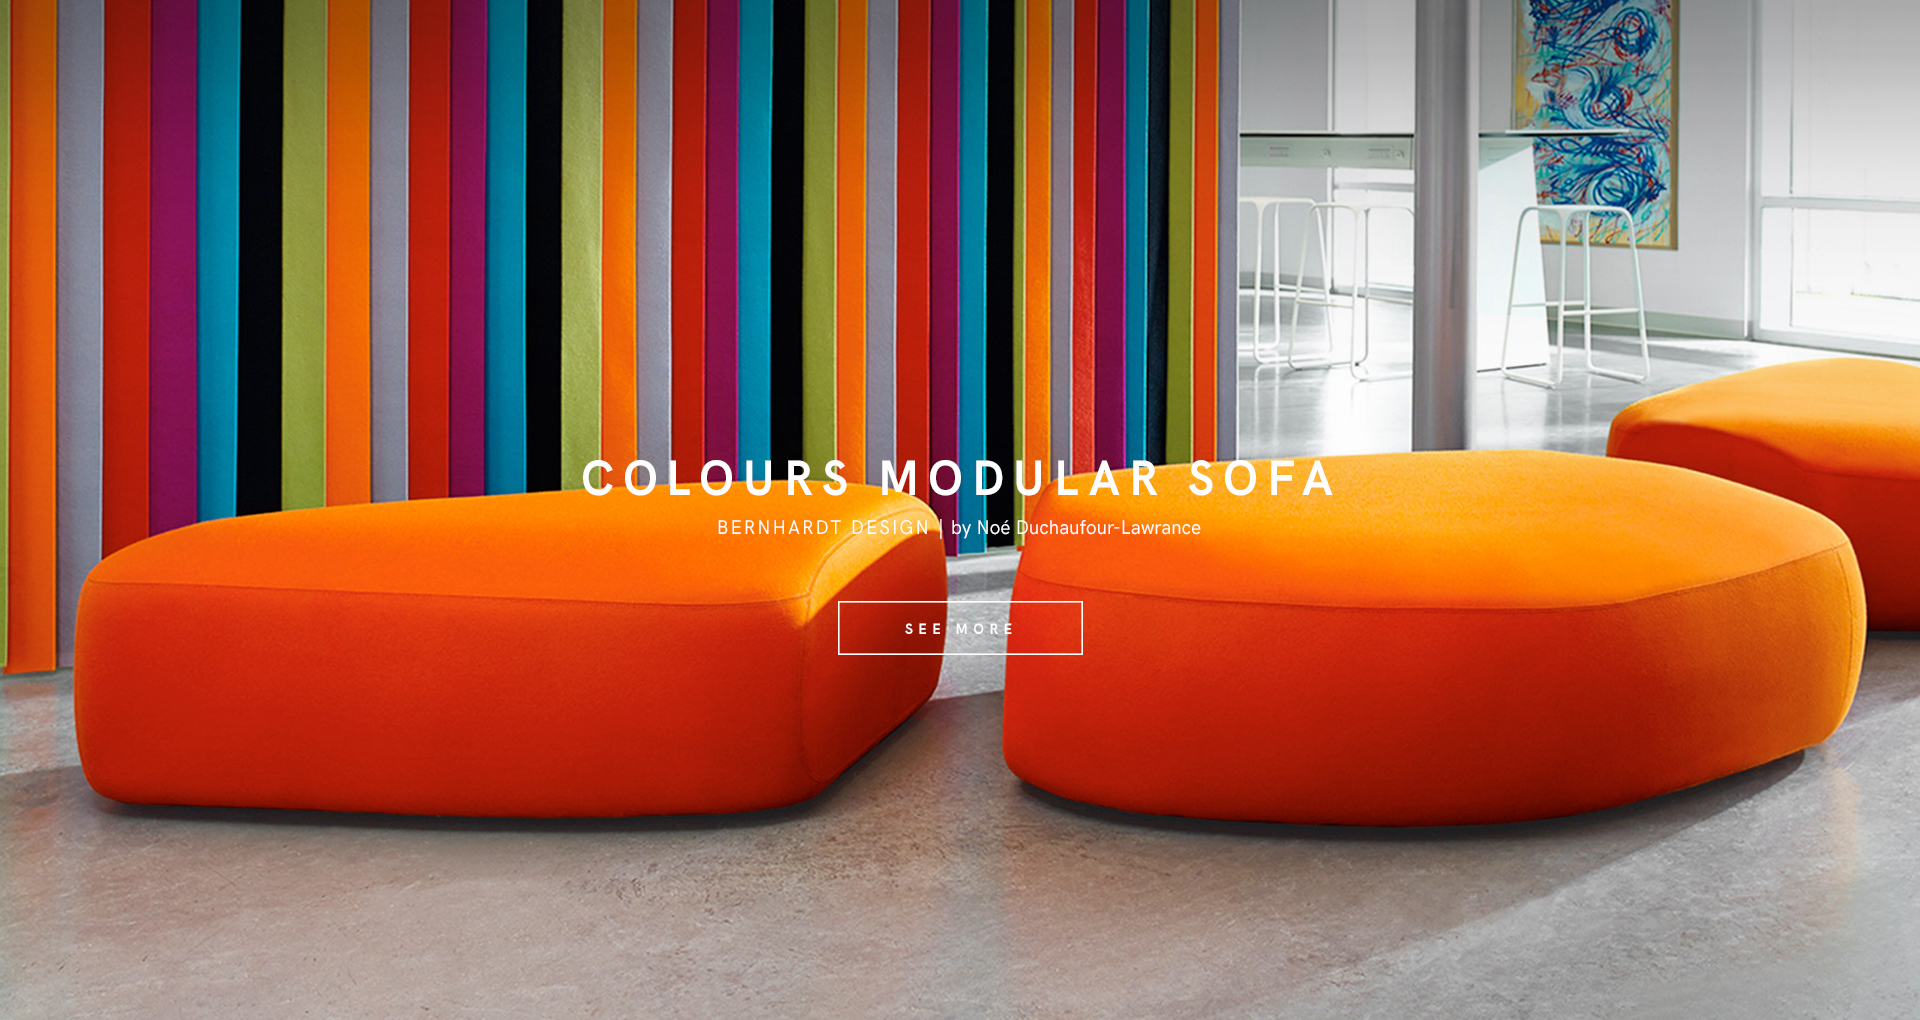 kezu bernhardt design colours modular sofa designed by Noé Duchaufour-Lawrance